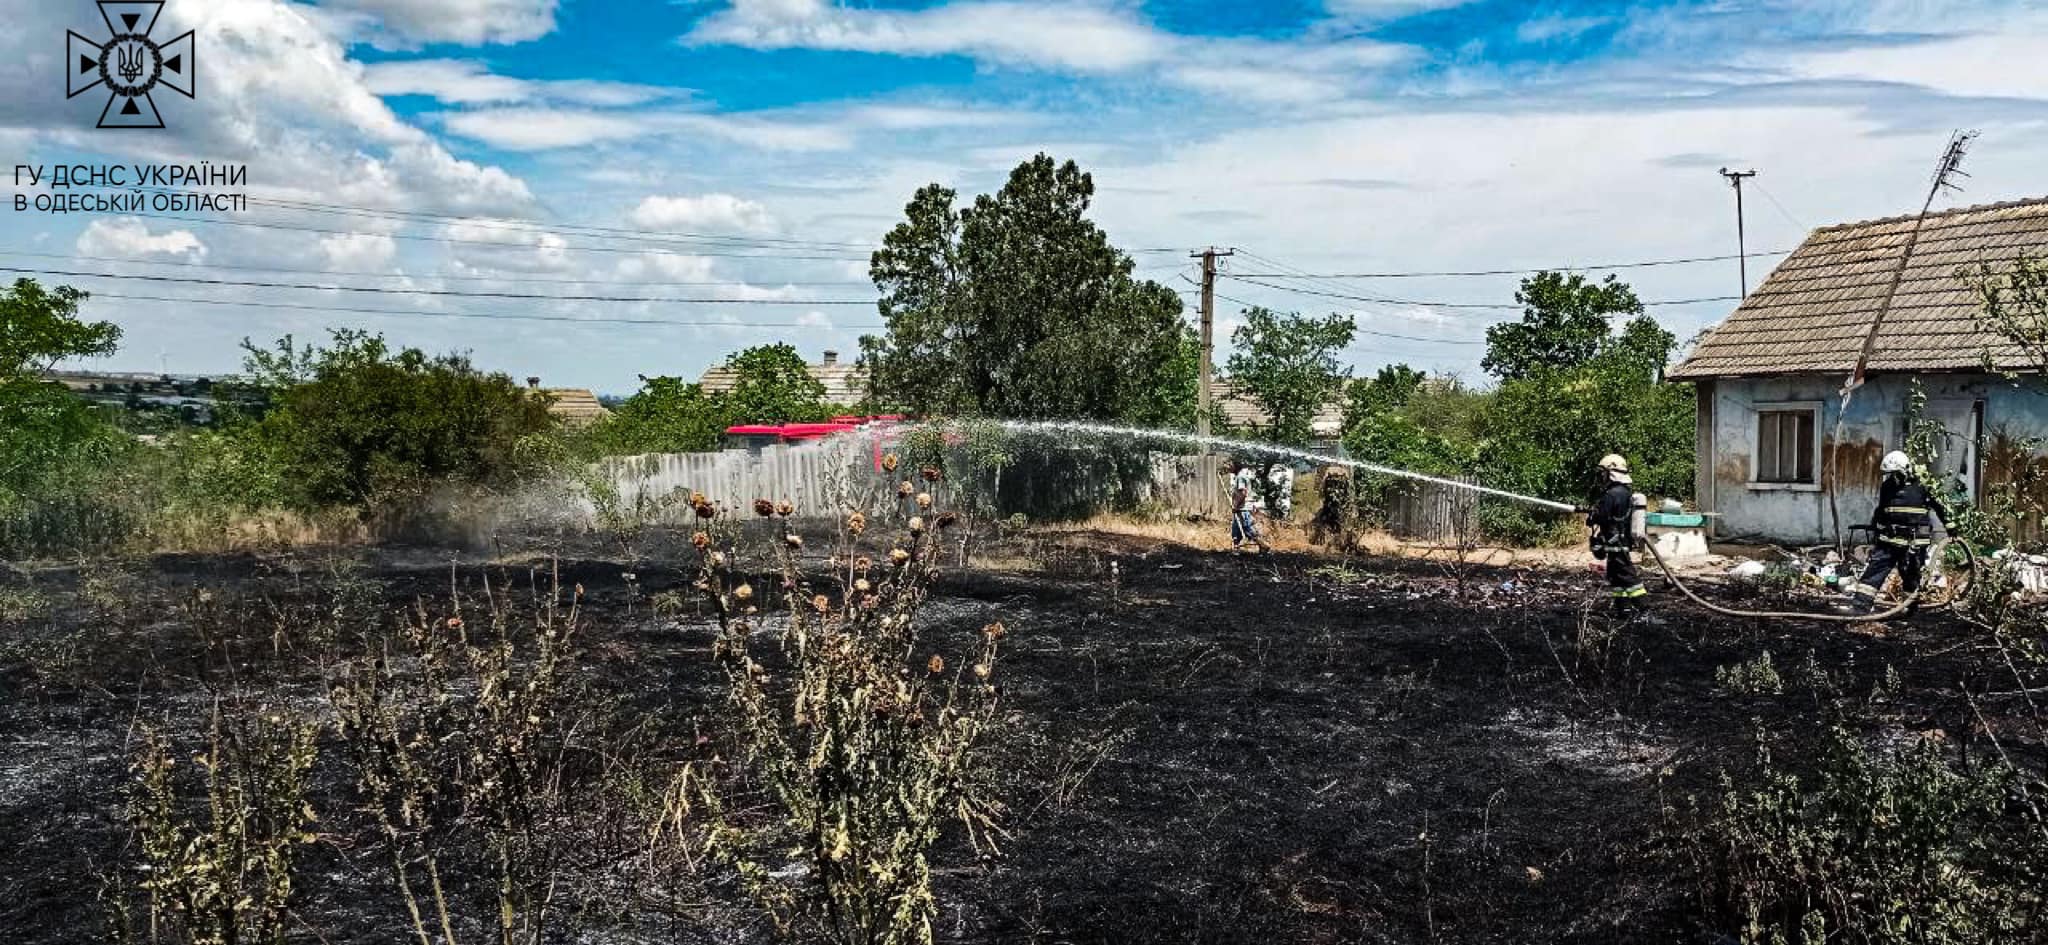 Только за сутки 28 пожаров в Одесской области уничтожили шесть гектаров земли: безответственность людей приводит к катастрофическим последствиям